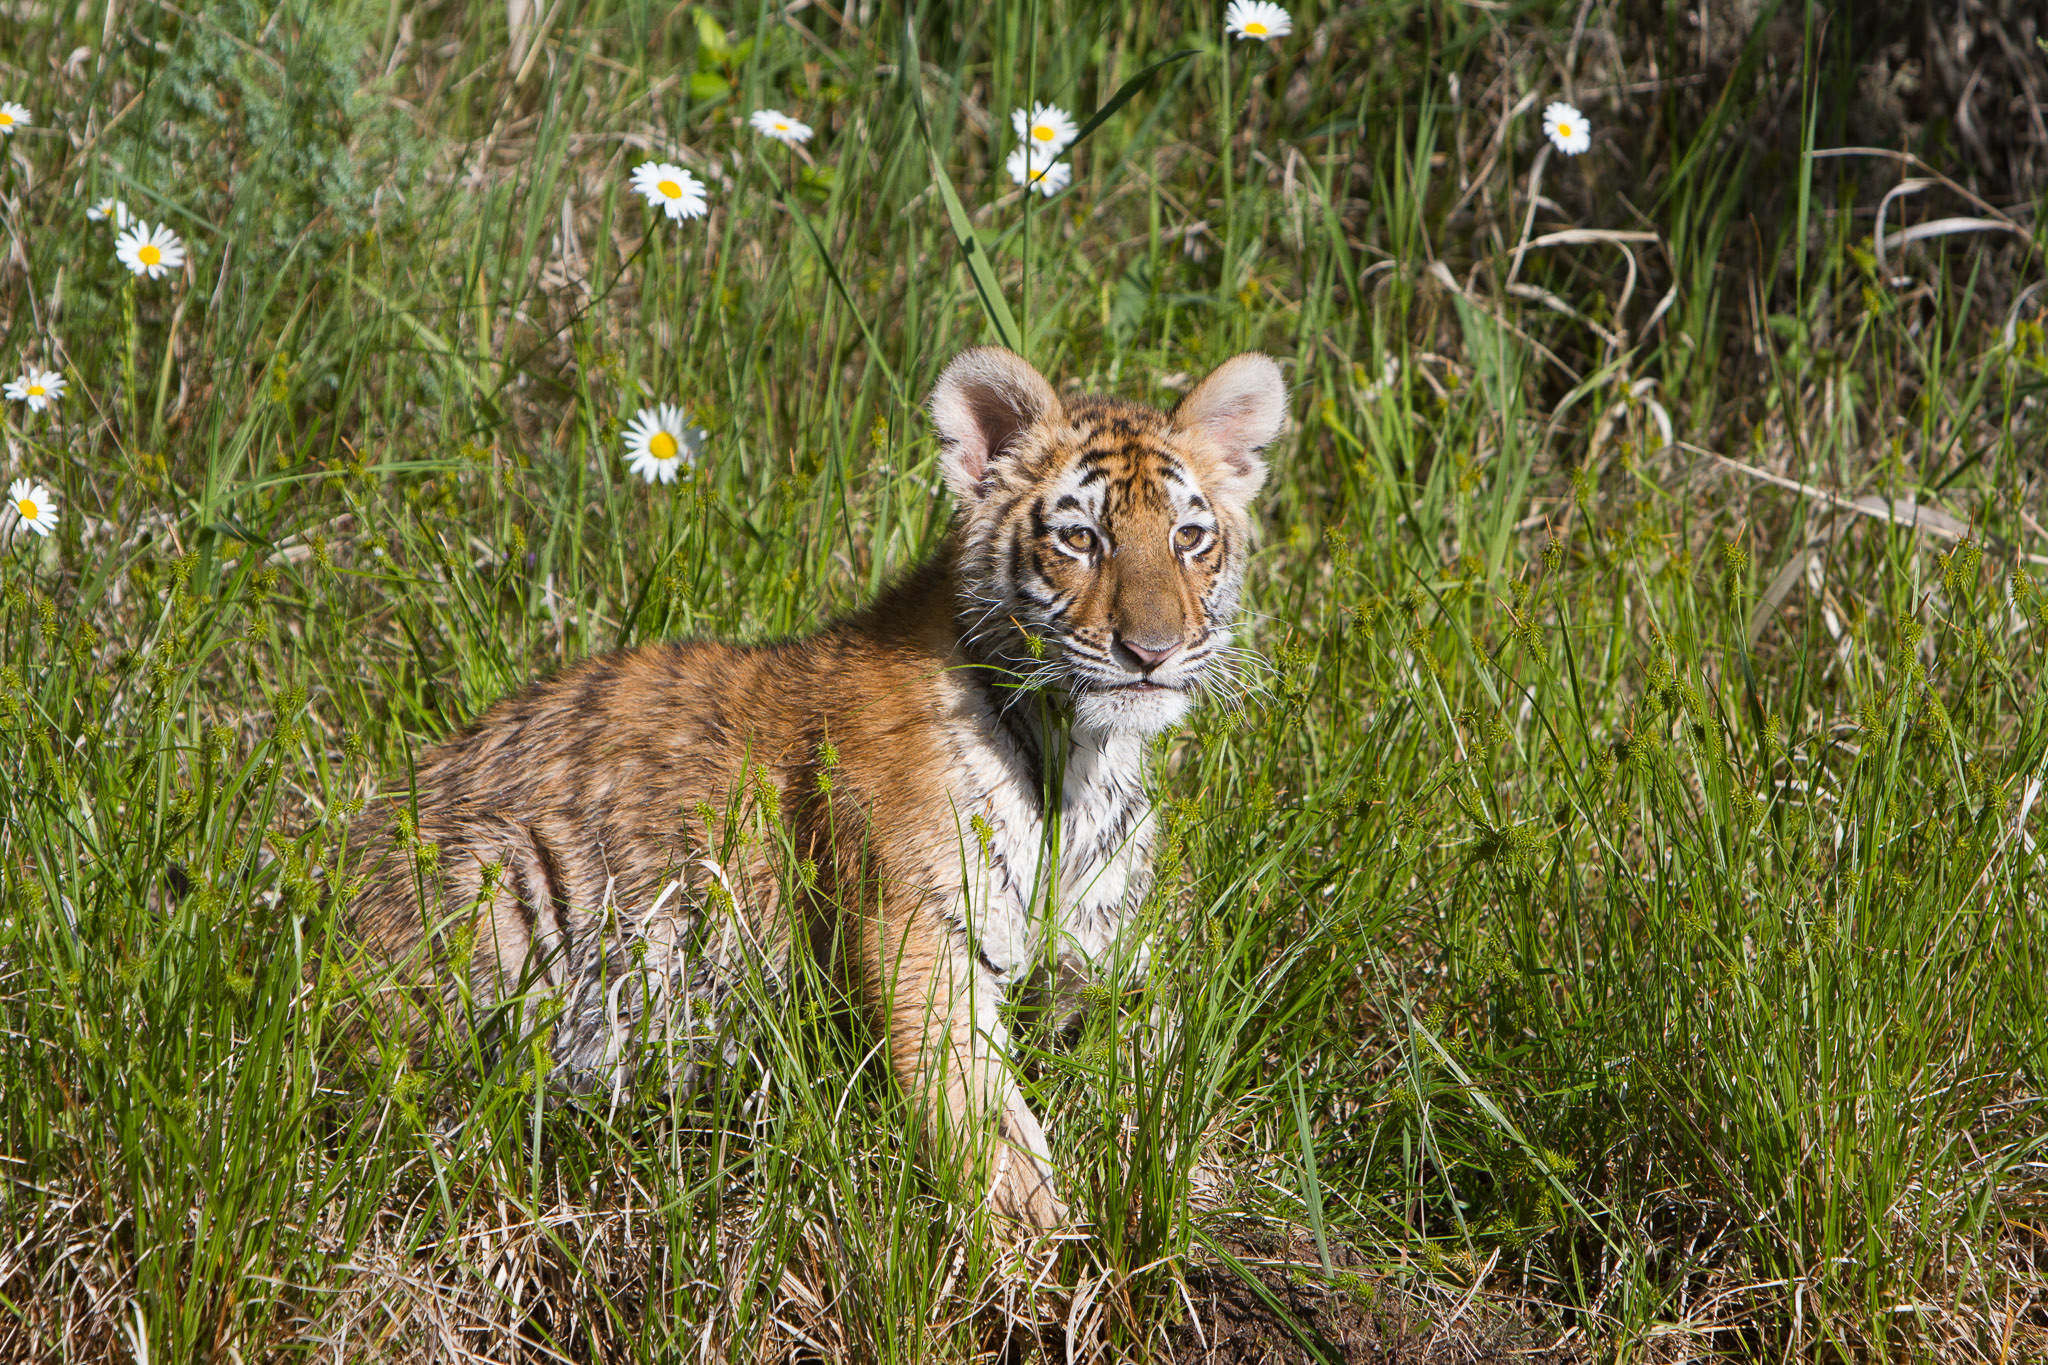  Tiger cub #20130707_0389-2 